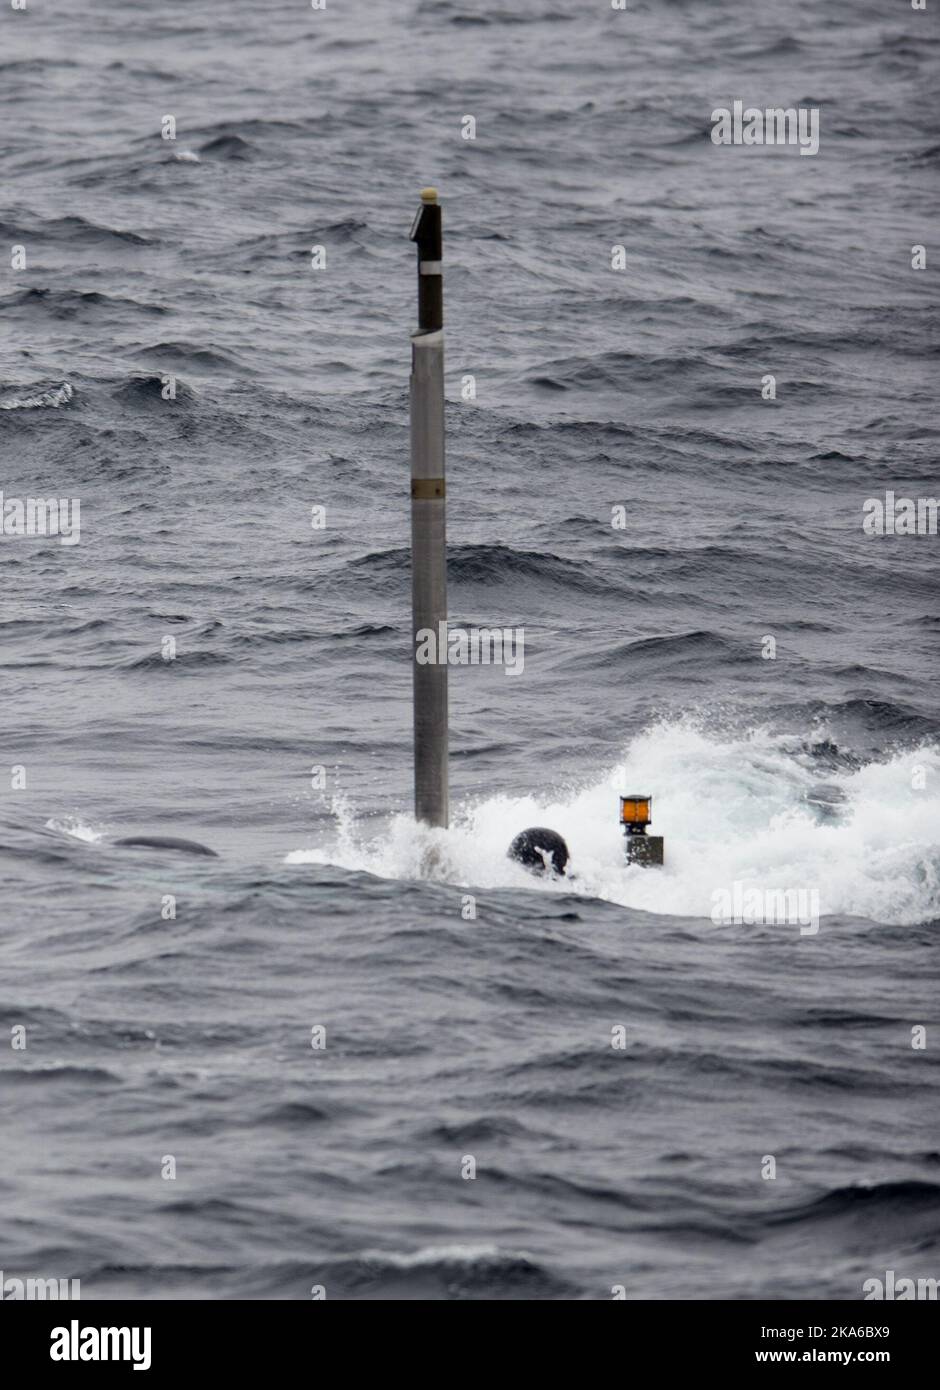 Bergen, Norvège 20150504. L'exercice sous-marin de l'OTAN, Dynamic Mongoose 2015, se déroule ces jours-ci dans les eaux au large de Bergen. Voici le sous-marin suédois Gotland sur leur chemin vers le bas dans les profondeurs. Photo: Marit HomMedal / NTB scanpix Banque D'Images